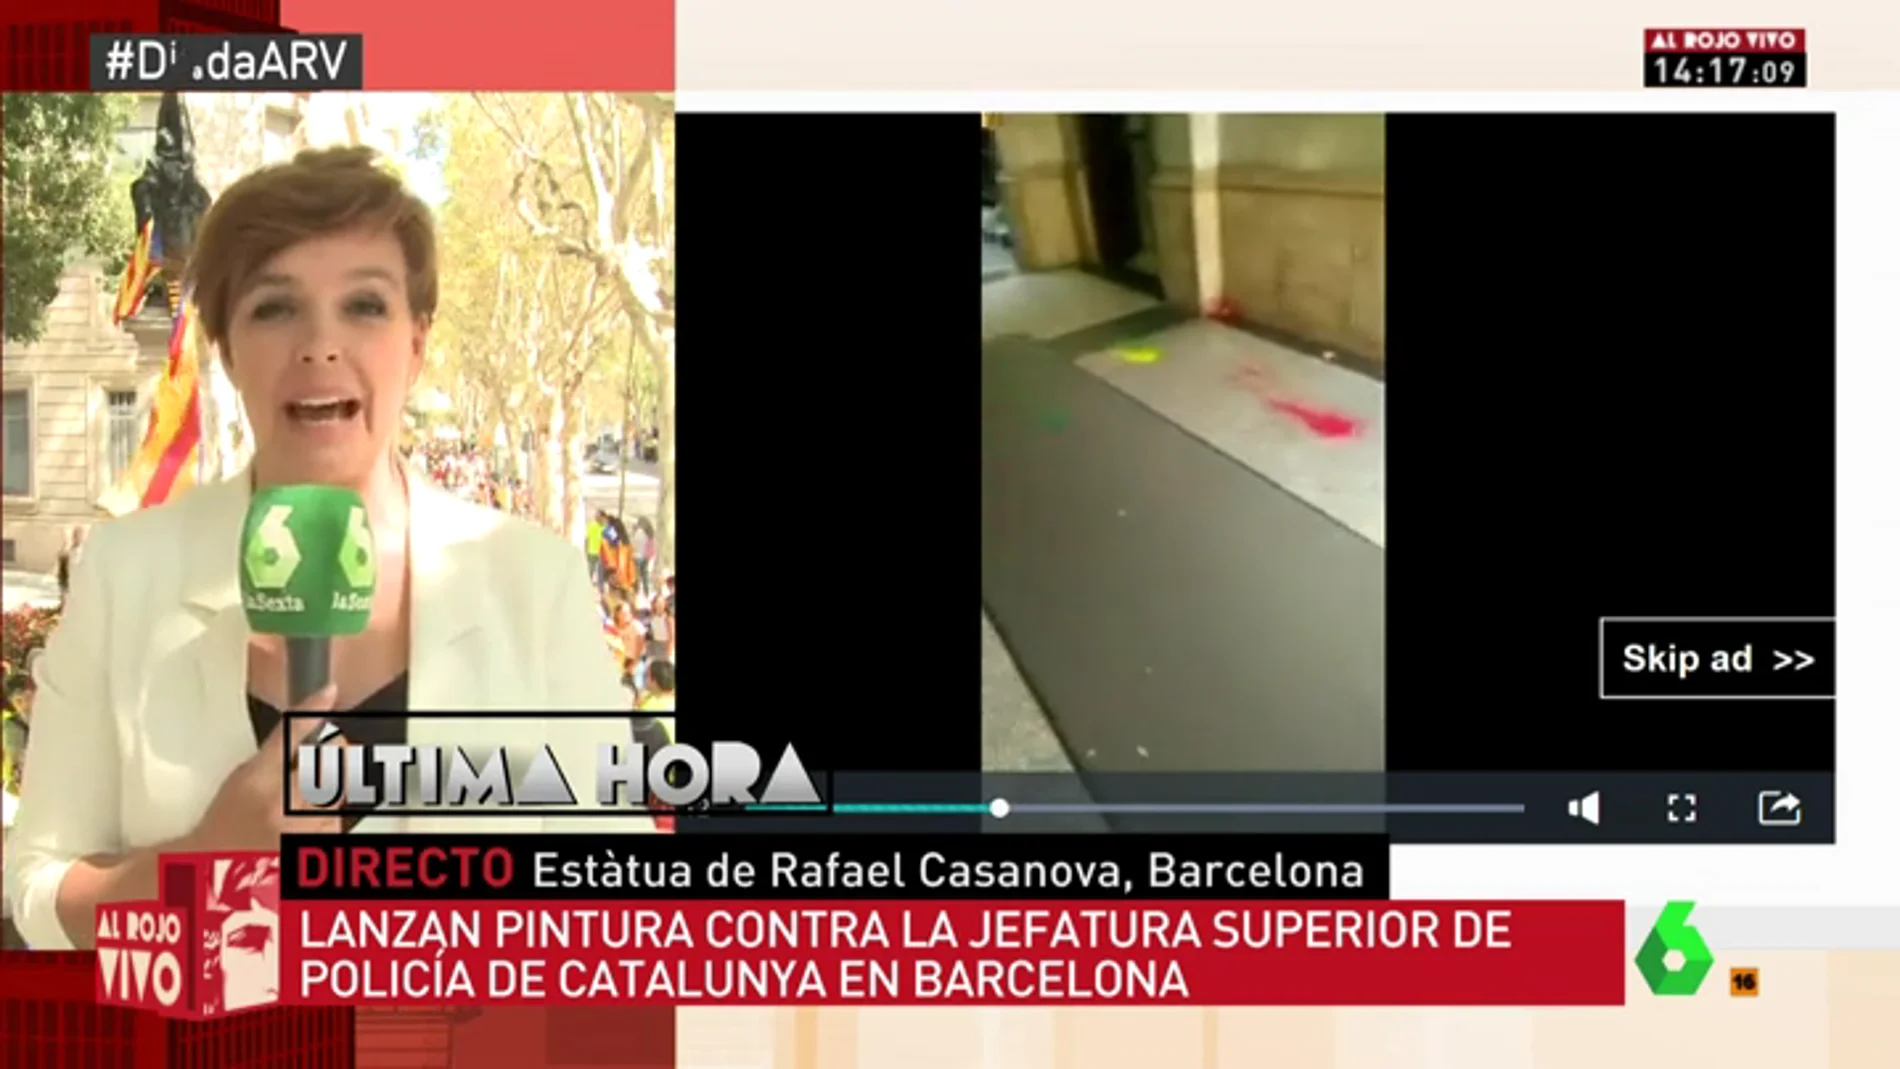 Lanzan botes de pintura contra la Jefatura Superior de Policía de Cataluña en Barcelona